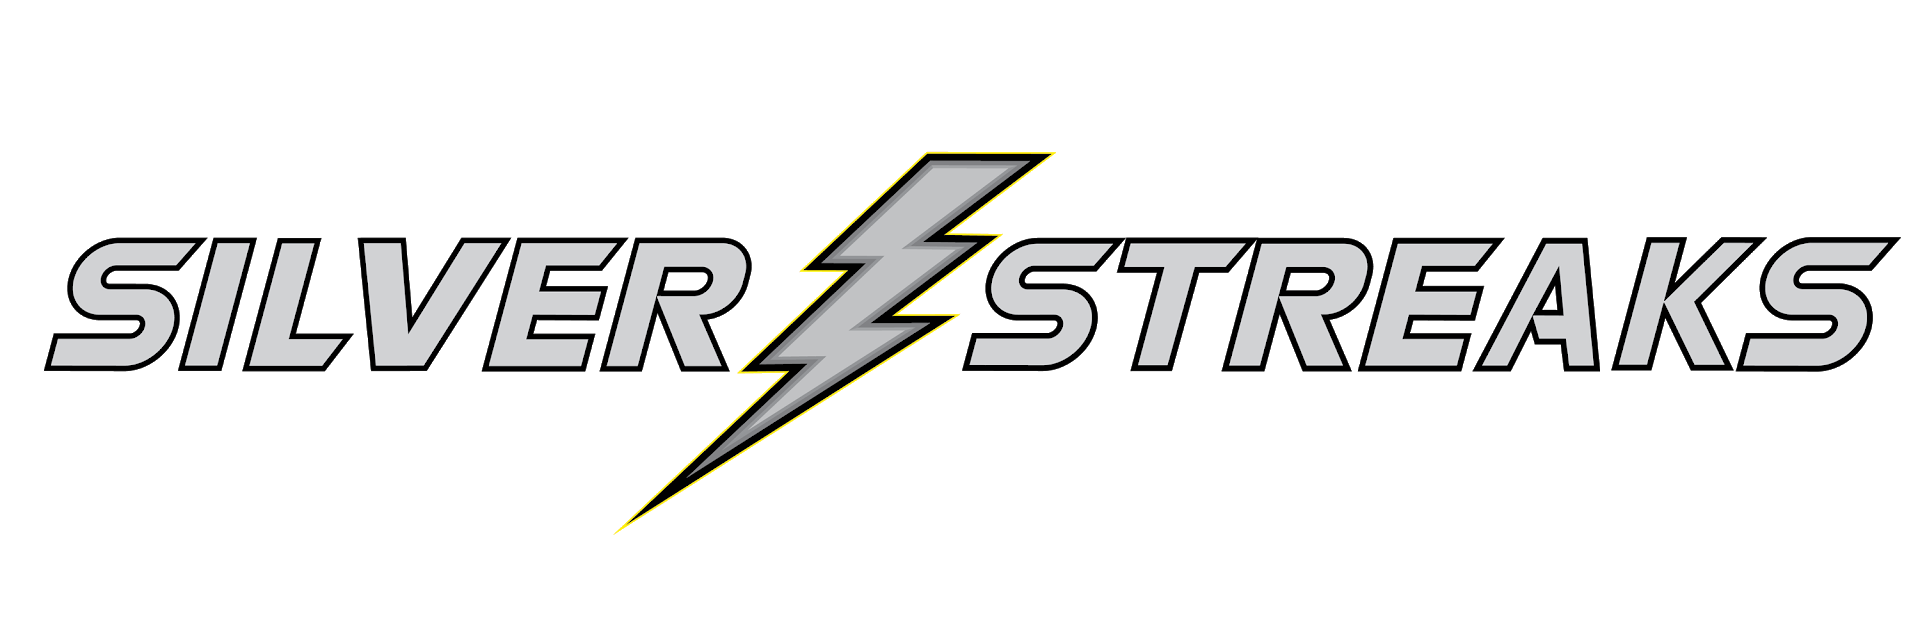 Silver Streak Logo - Silver Streaks Invite